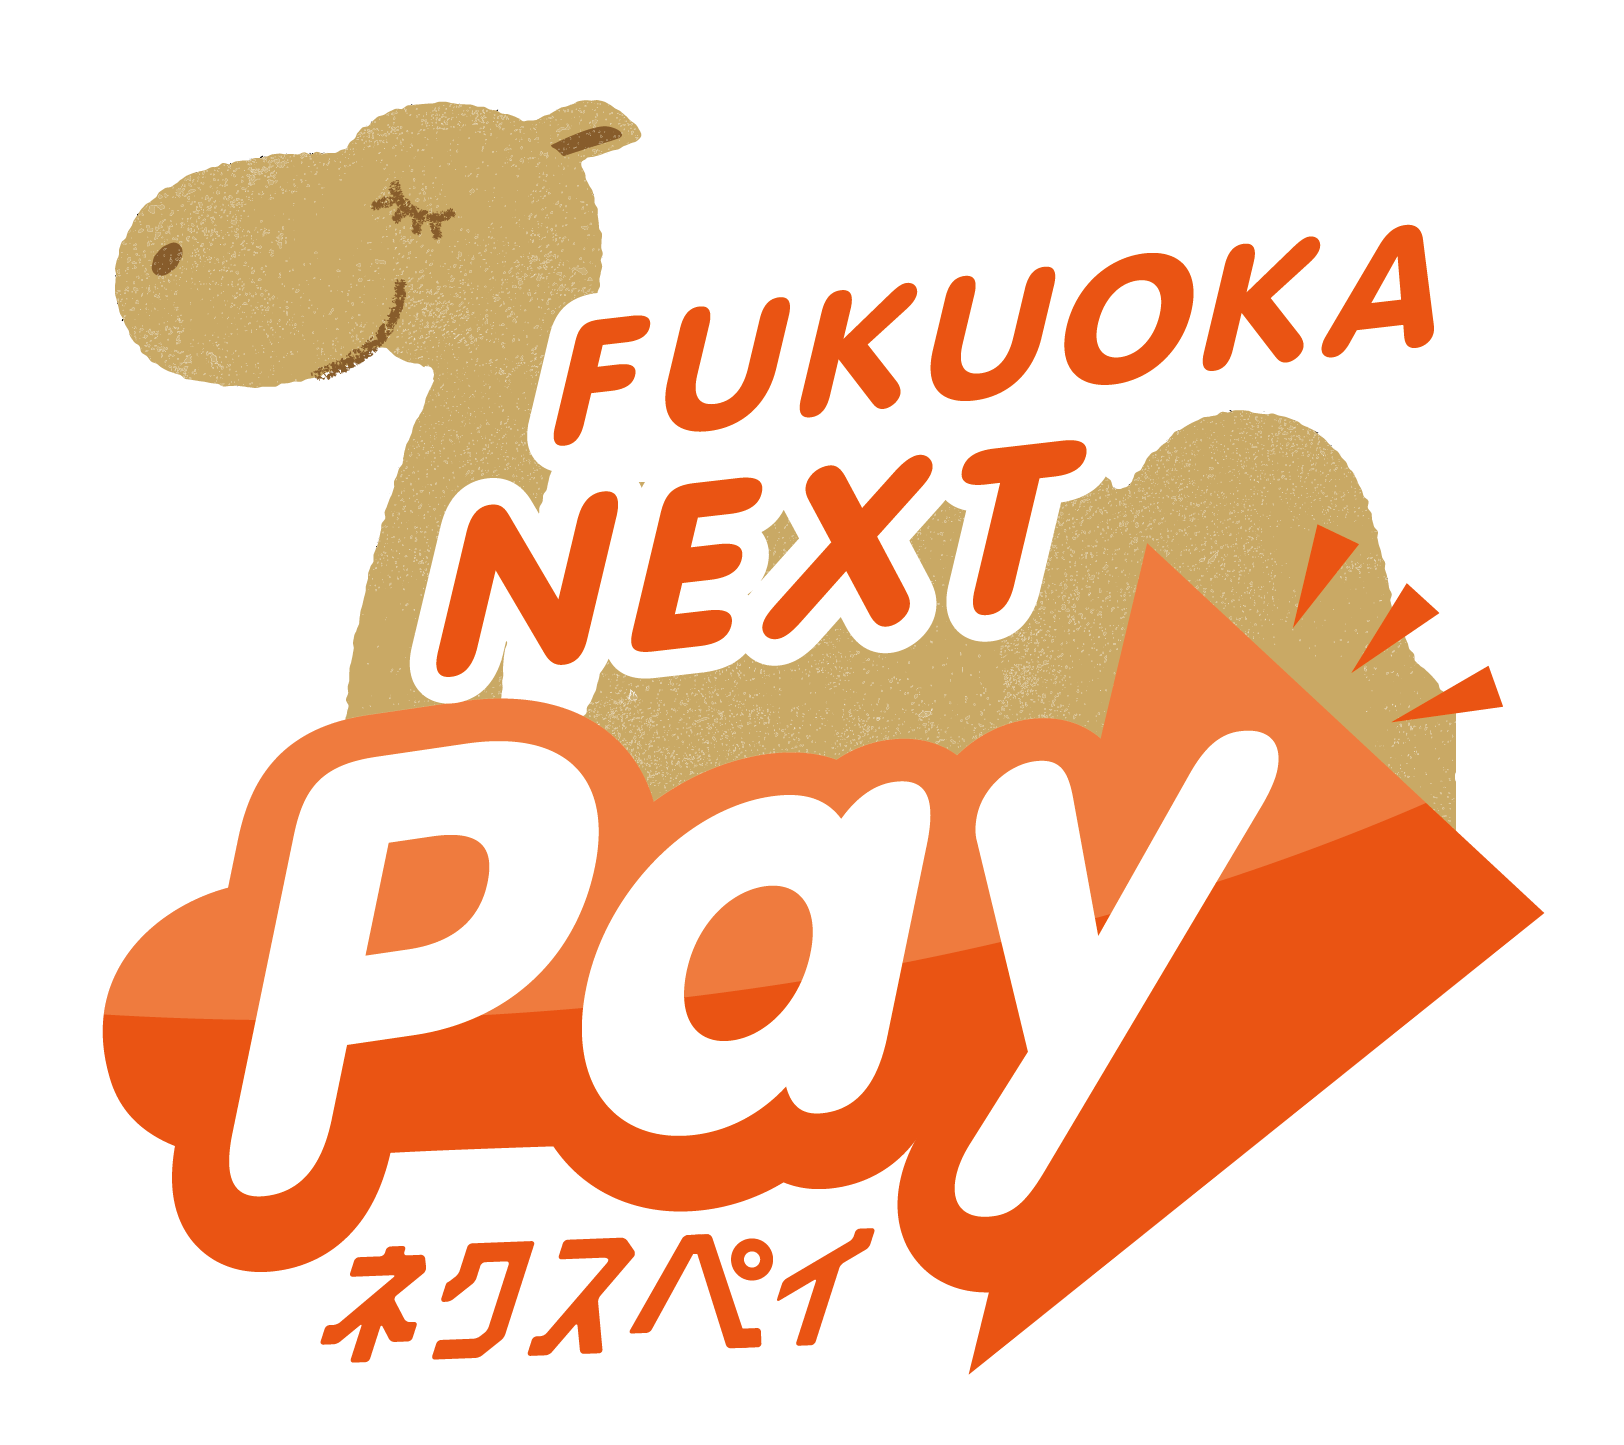 FUKUOKA NEXT Pay (ネクスペイ)